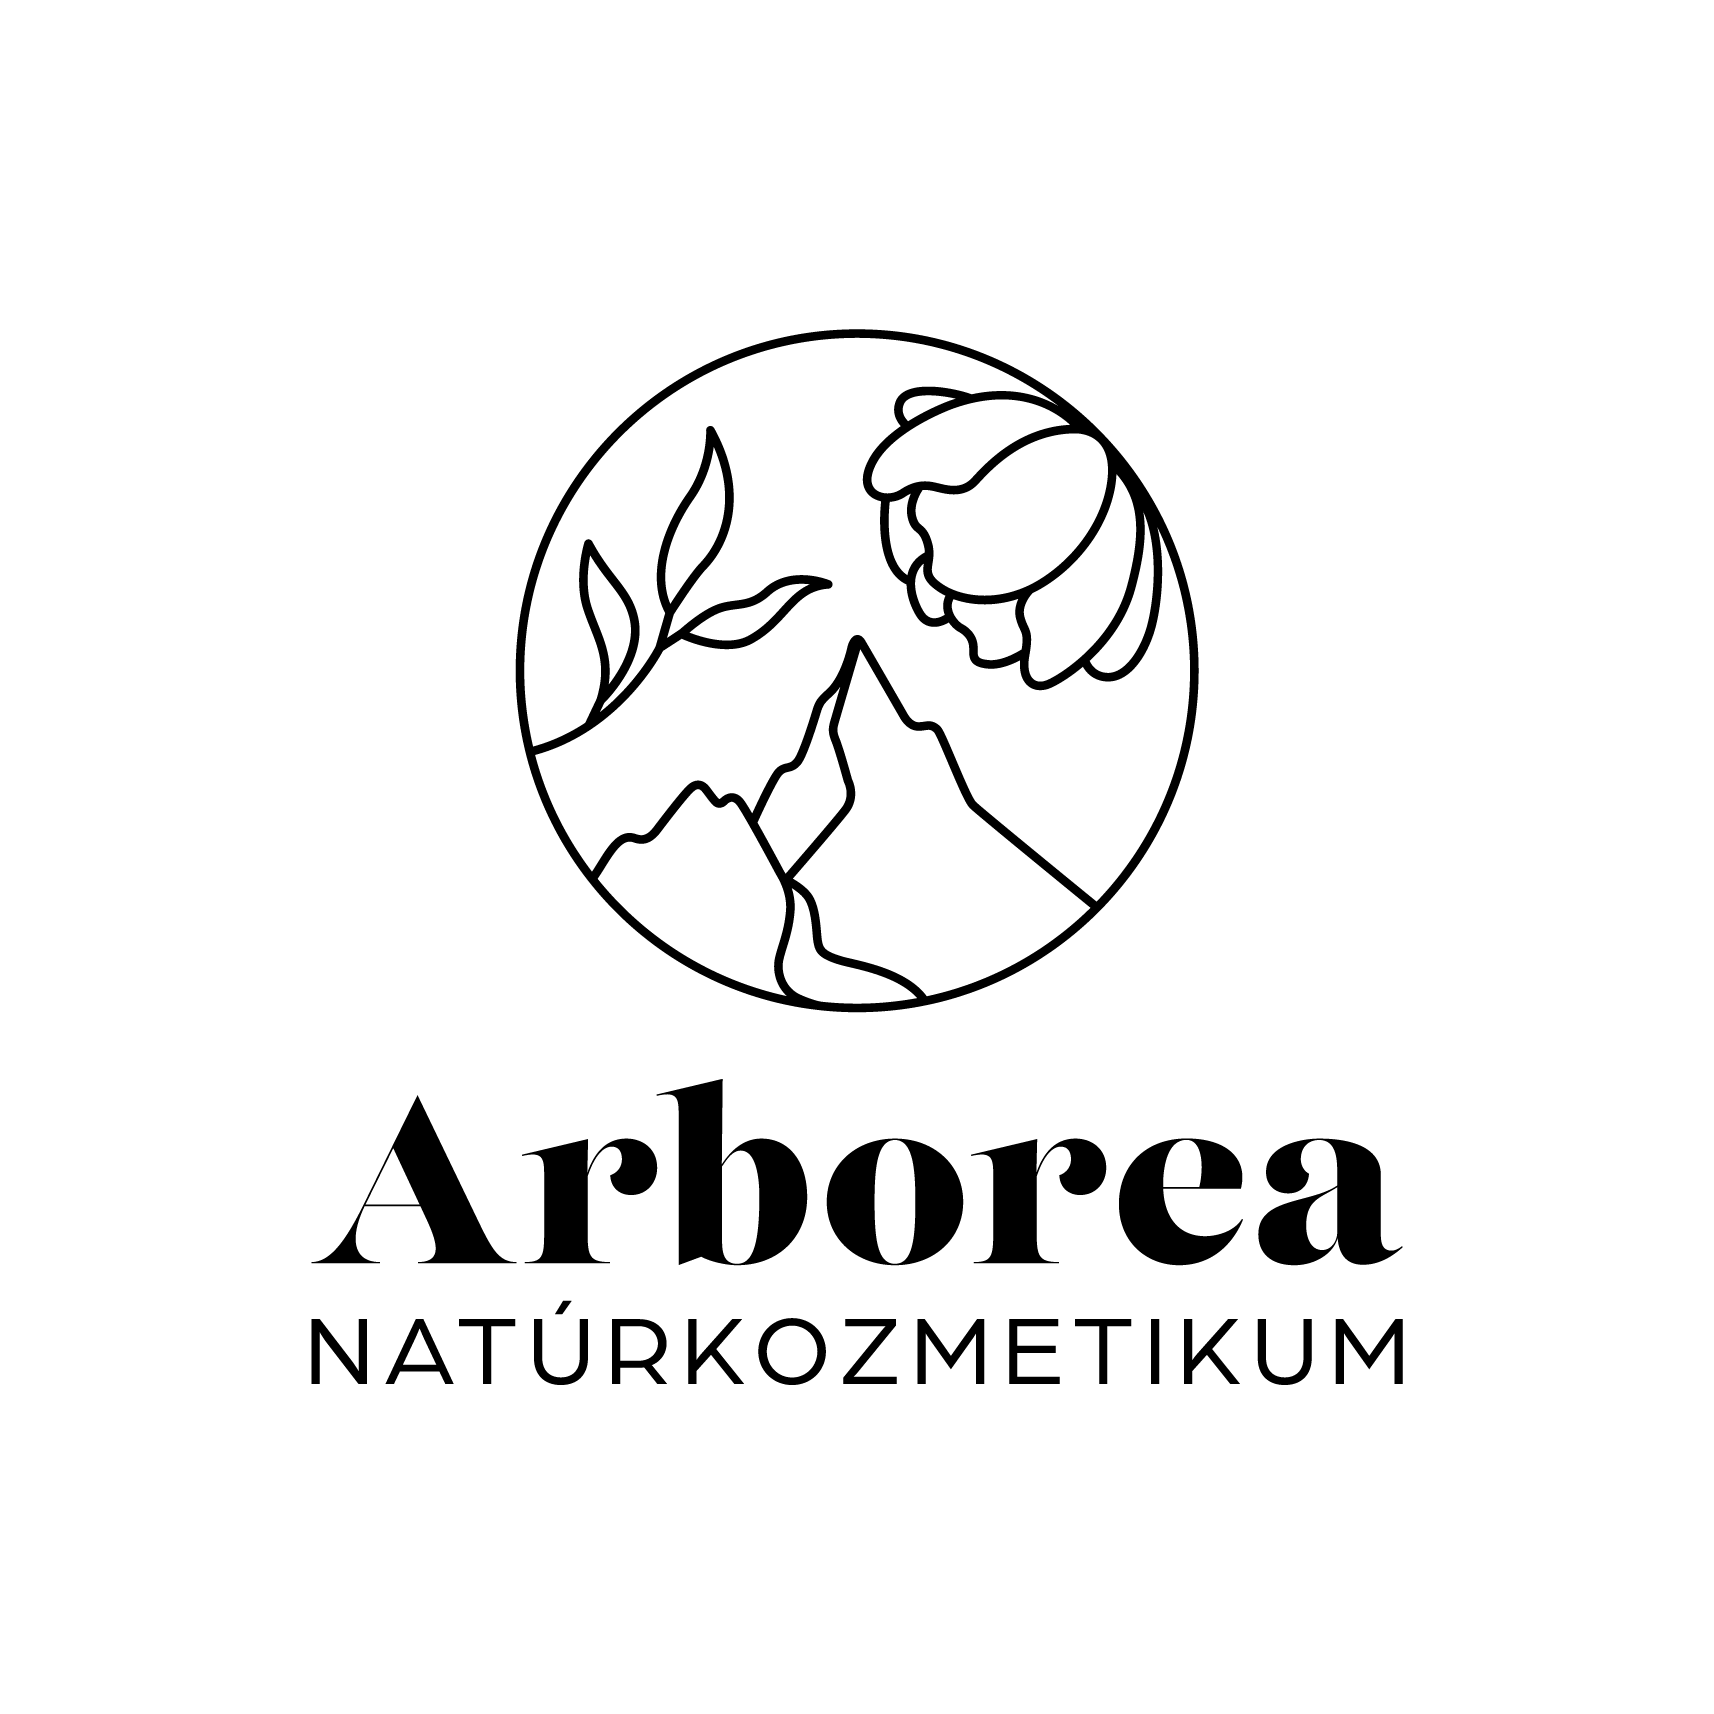 arborea natúrkozmetikumok logója